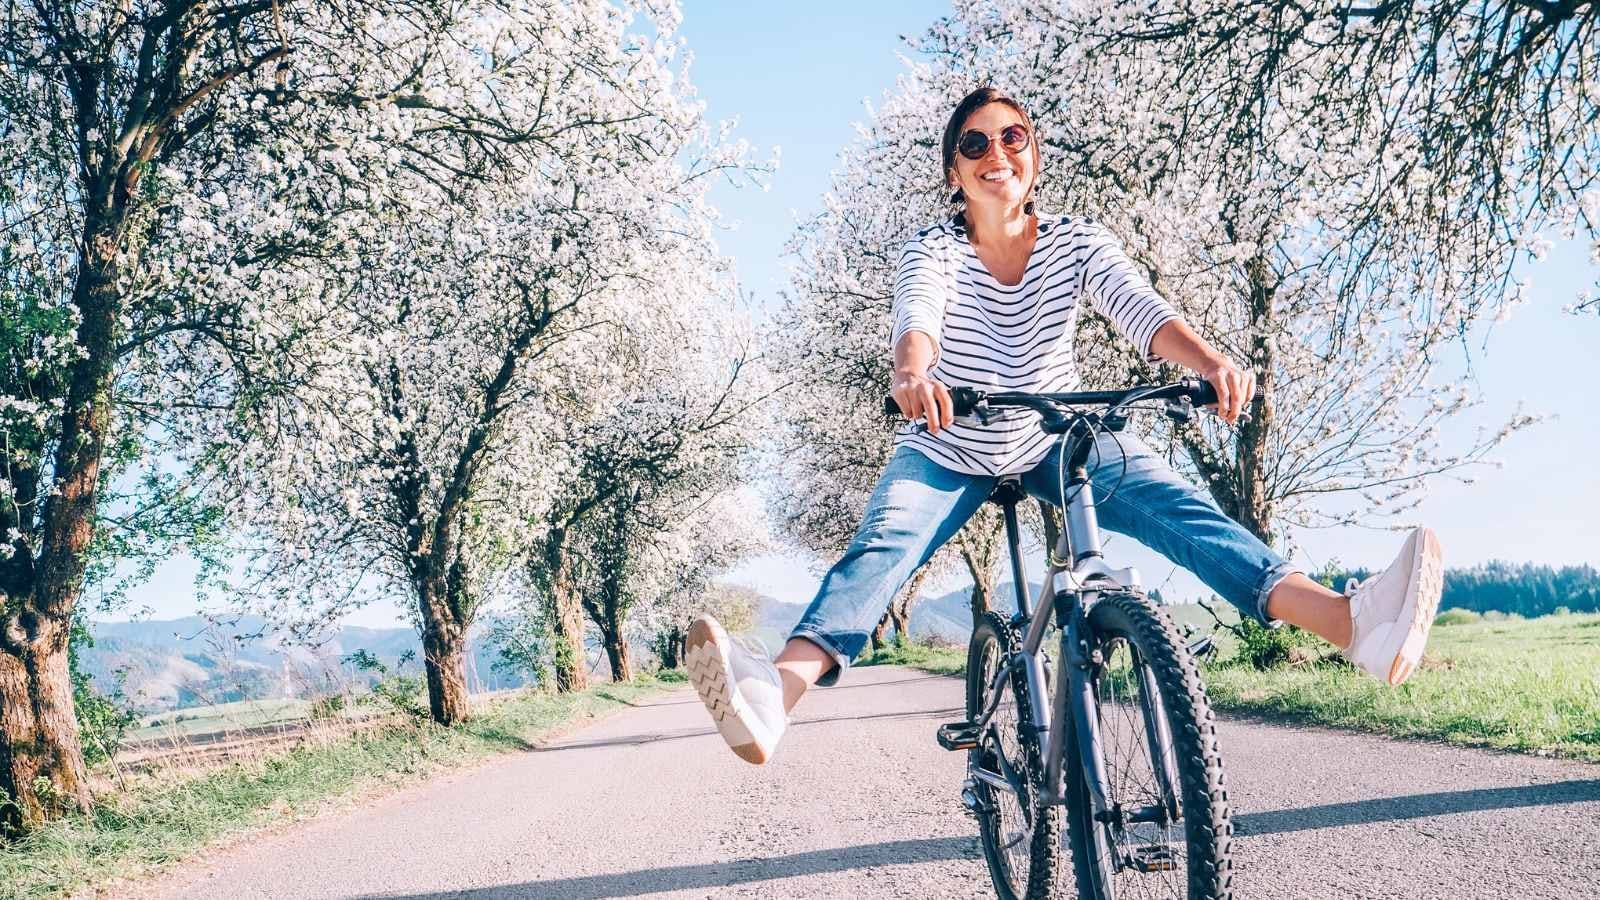 een vrouw slingert haar benen vrolijk vooruit op de fiets, op de achtergrond staan bomen vol in de bloesems